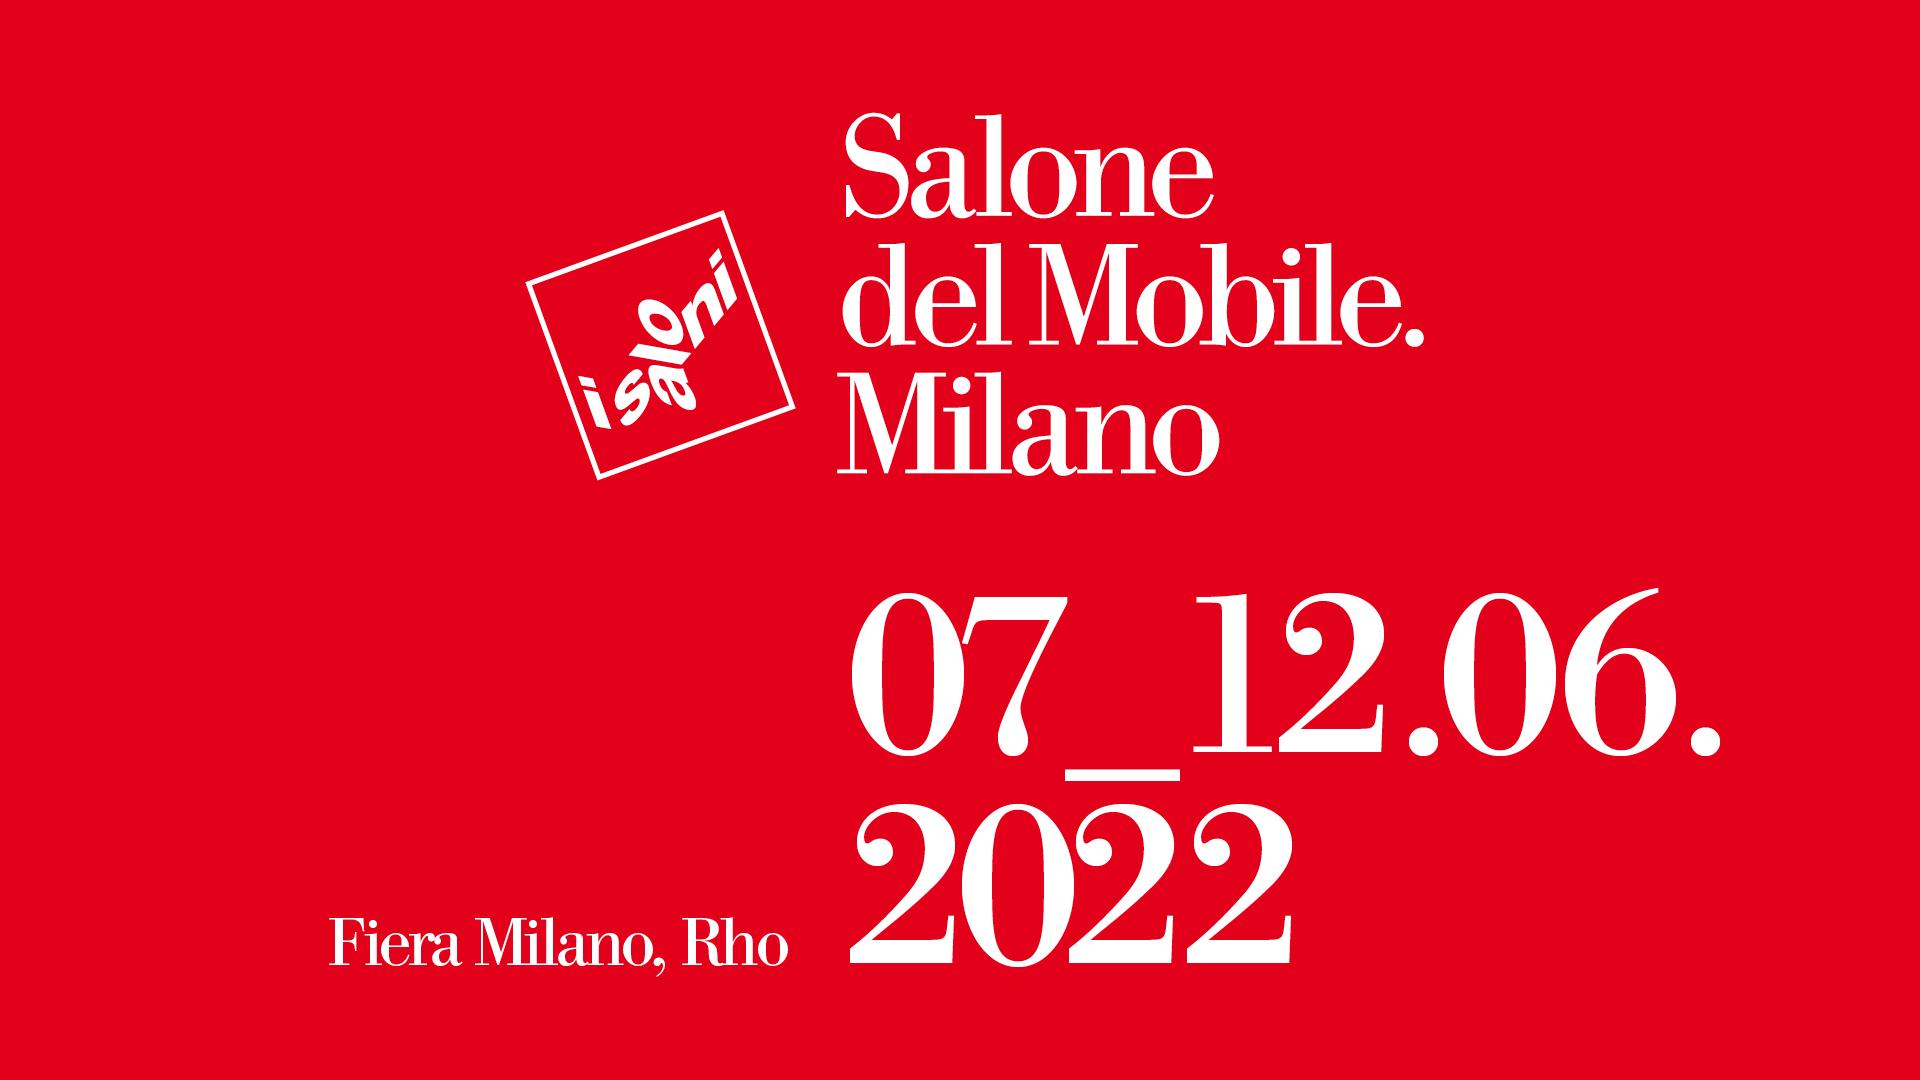 Přečtete si více ze článku Salone del Mobile.Milano 2022